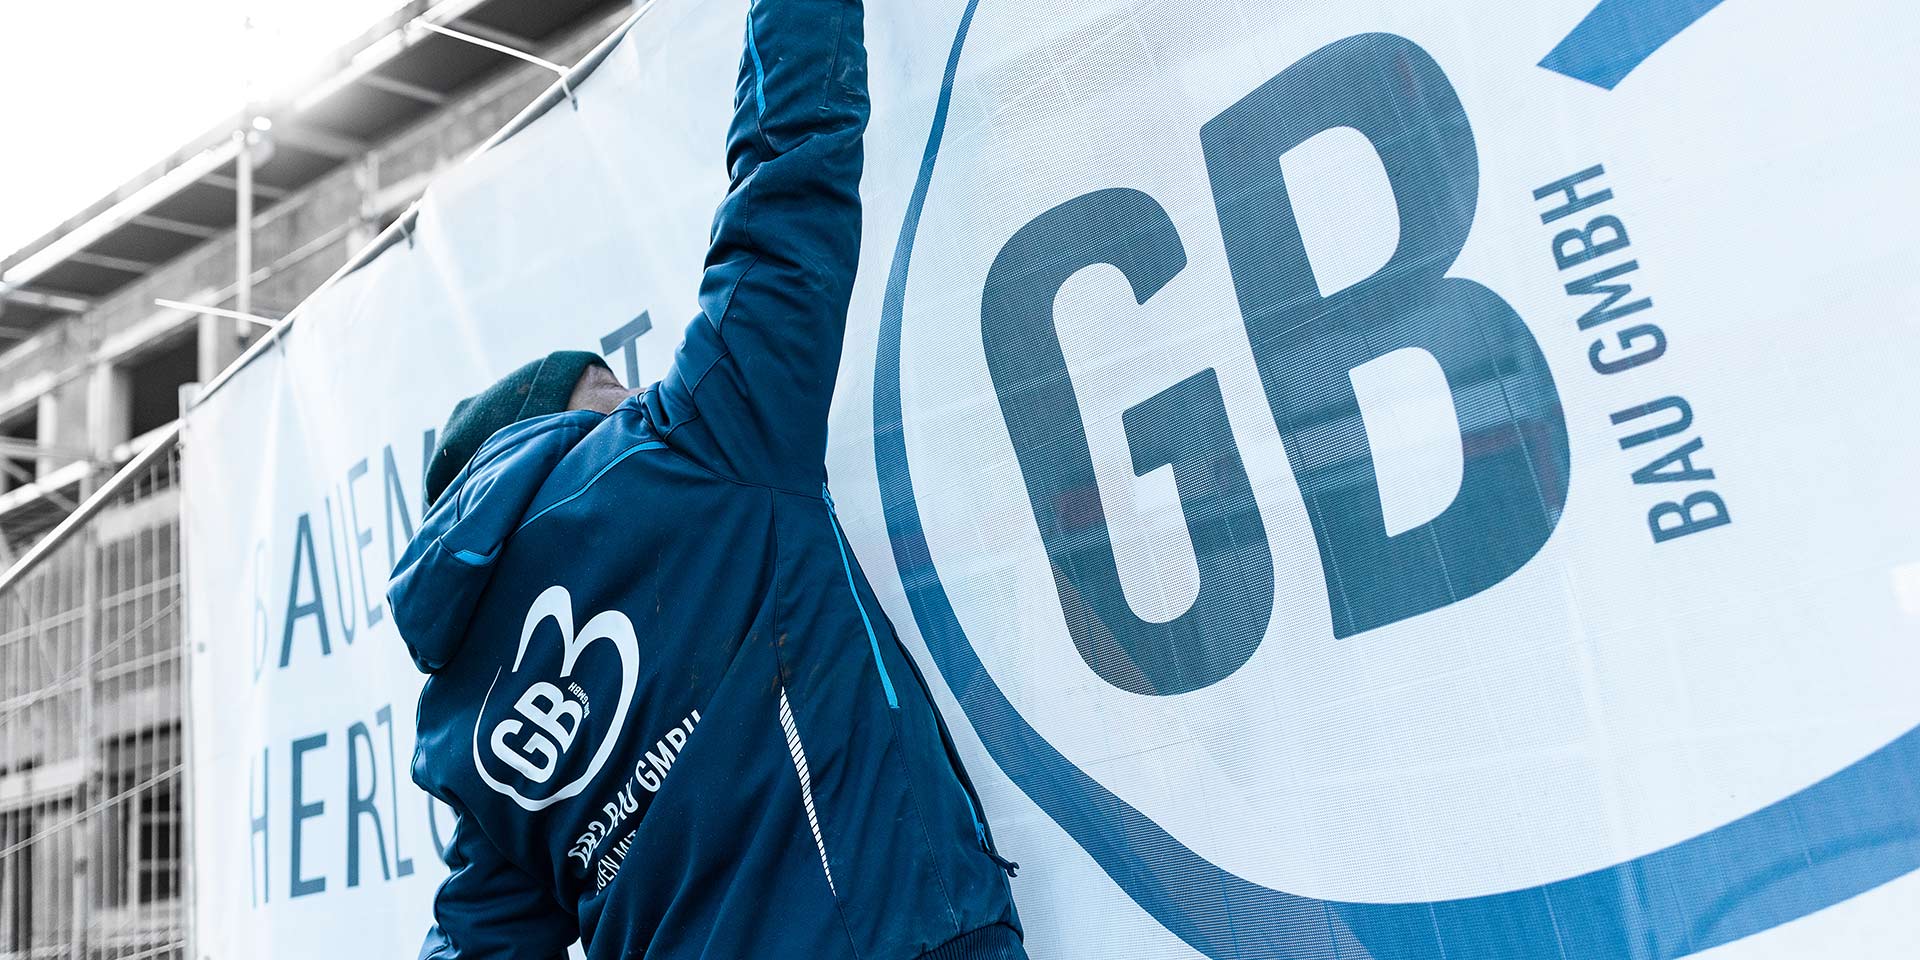 GB3 Bau GmbH